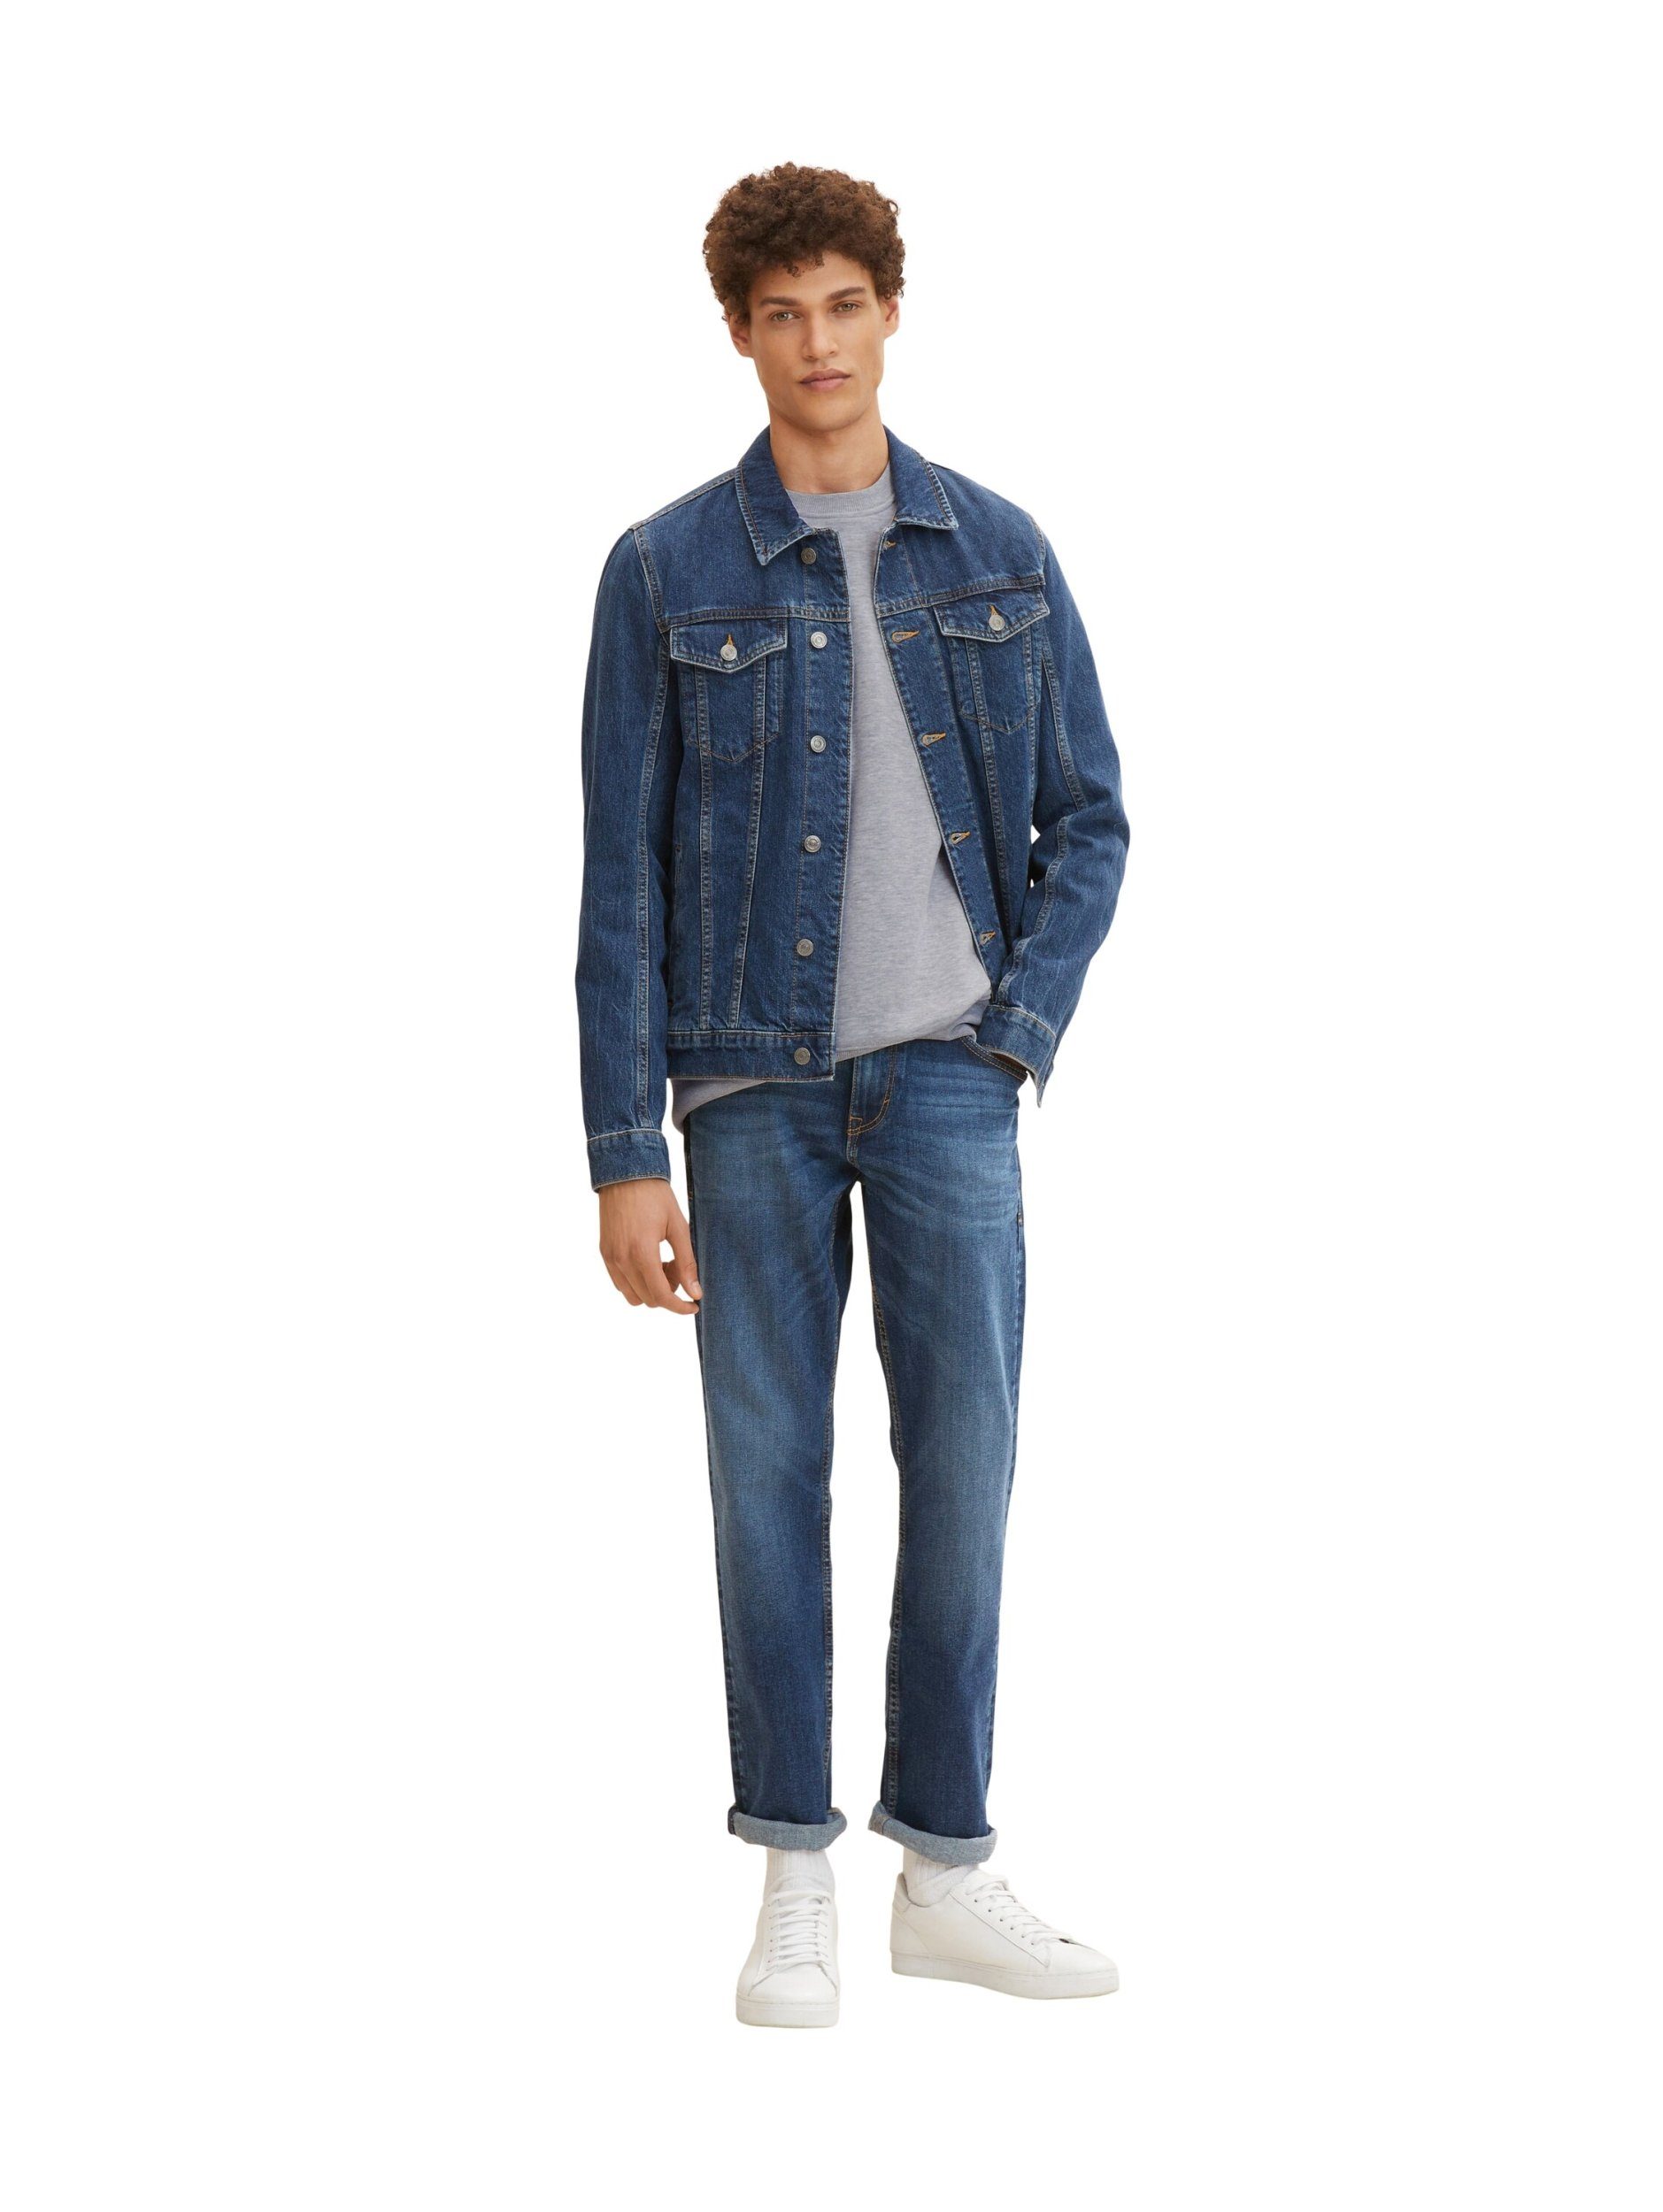 Tailor Tom TOM 5-Pocket-Jeans TAILOR Marvin blau